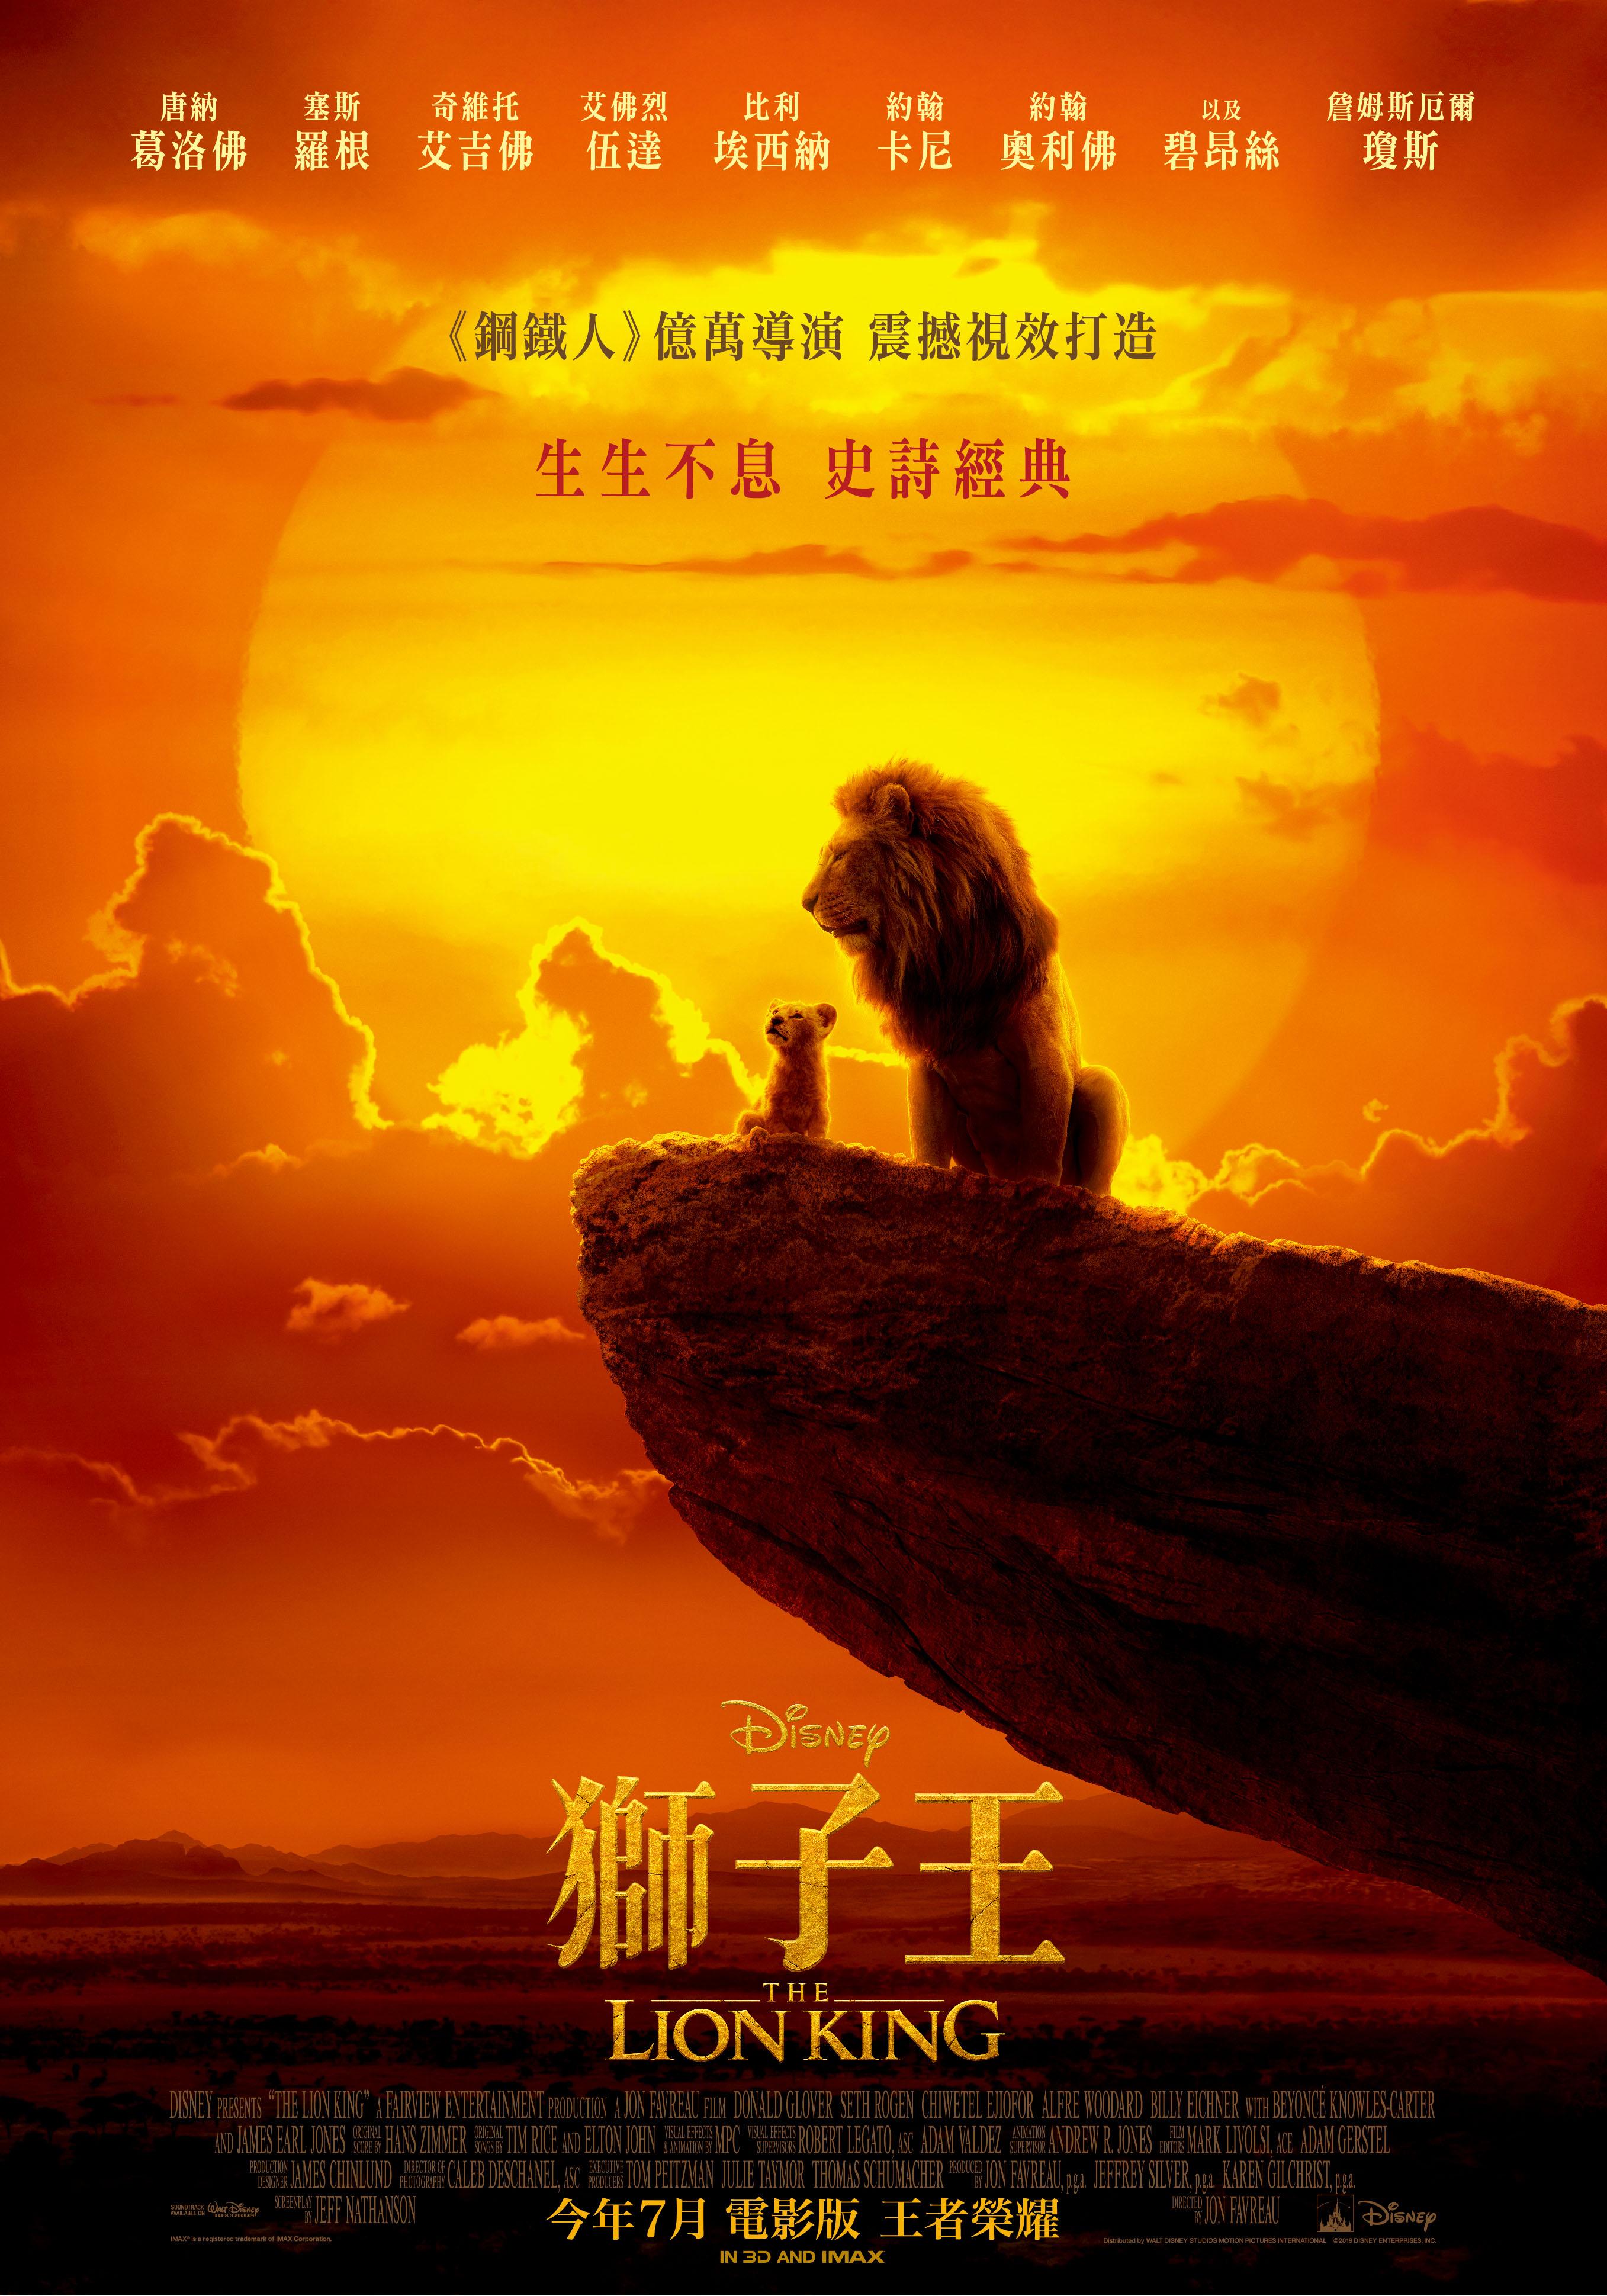 狮子王 / 狮子王真人版 / 狮子王真实版【4K原盘DIY台配国语/粤语 简繁/双语特效字幕】 The Lion King 2019 2160p UHD Blu-ray HEVC TrueHD Atmos 7.1-Thor@HDSky    [57.57 GB ]-4.jpg